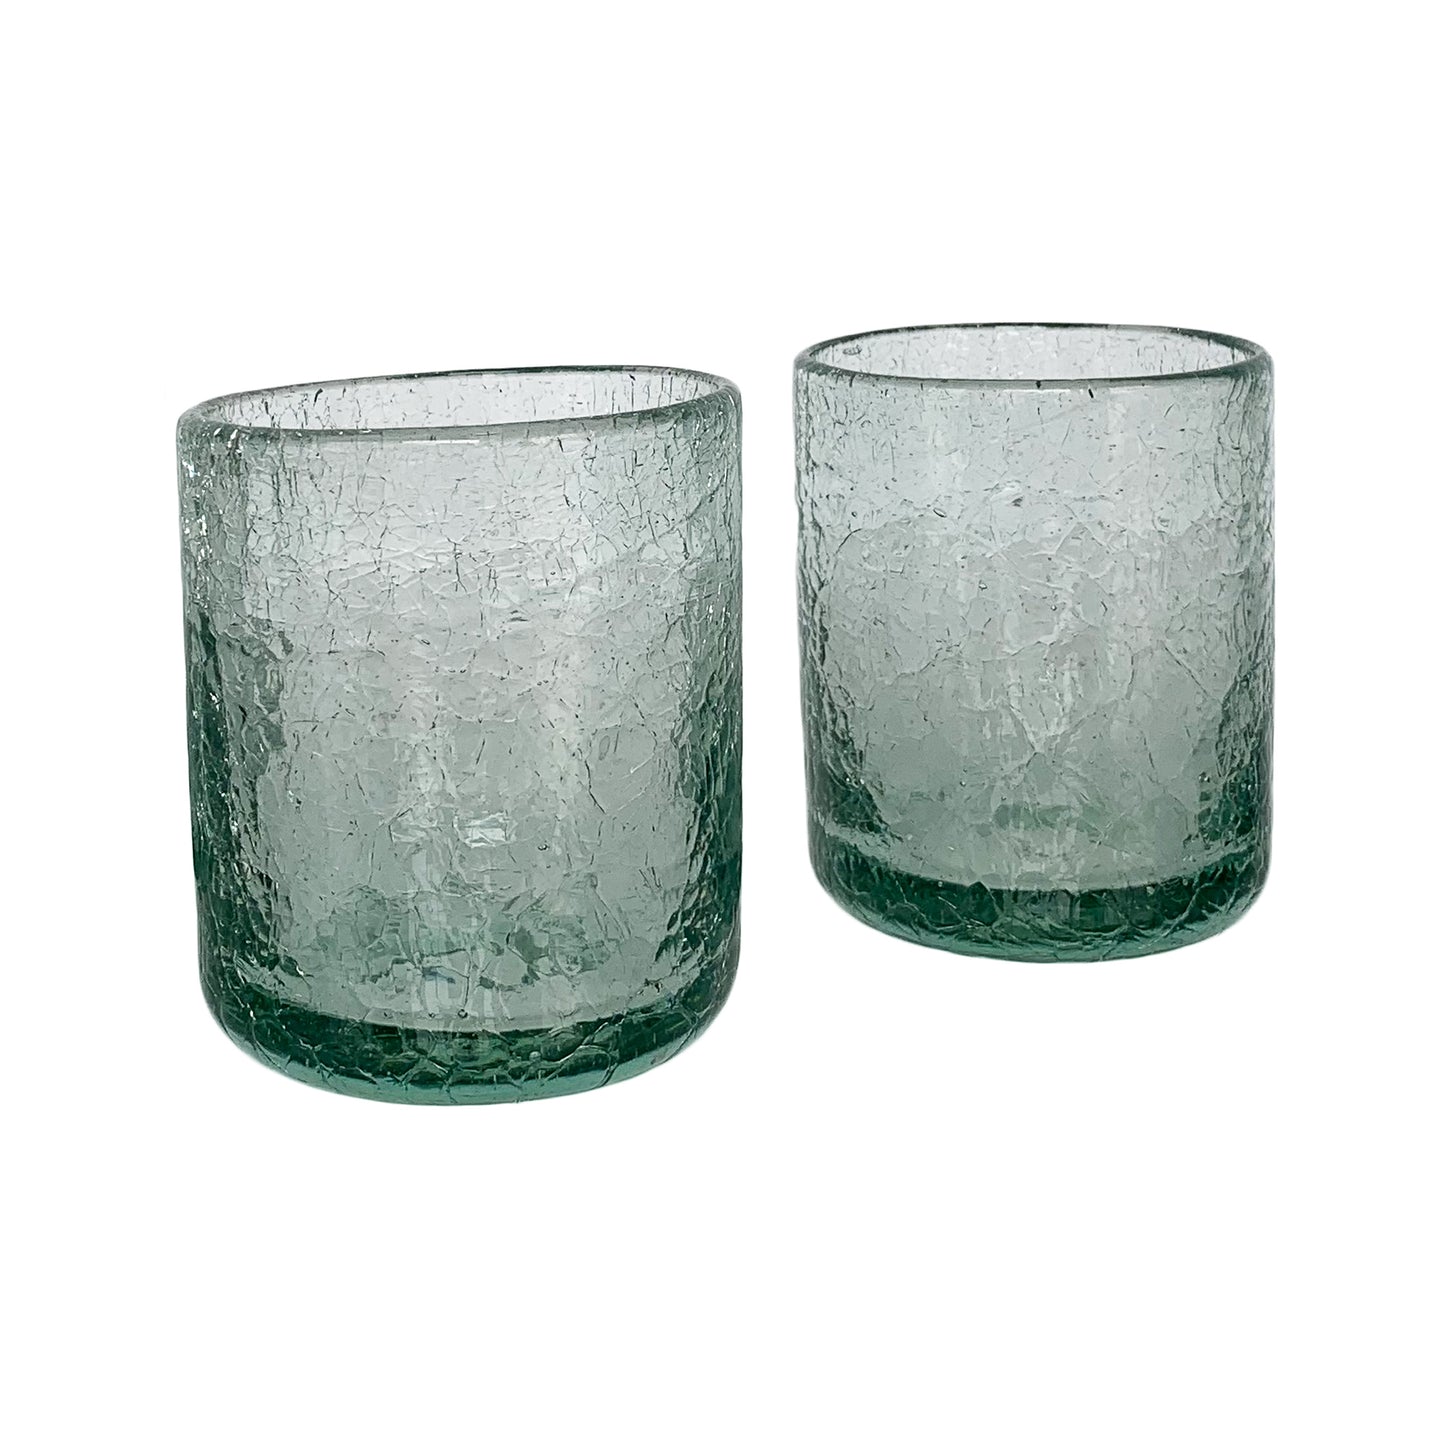 Vasos de vidrio agrietado soplado a mano, juego de 2 | Vasos mexicanos para beber | Capacidad de 12 onzas